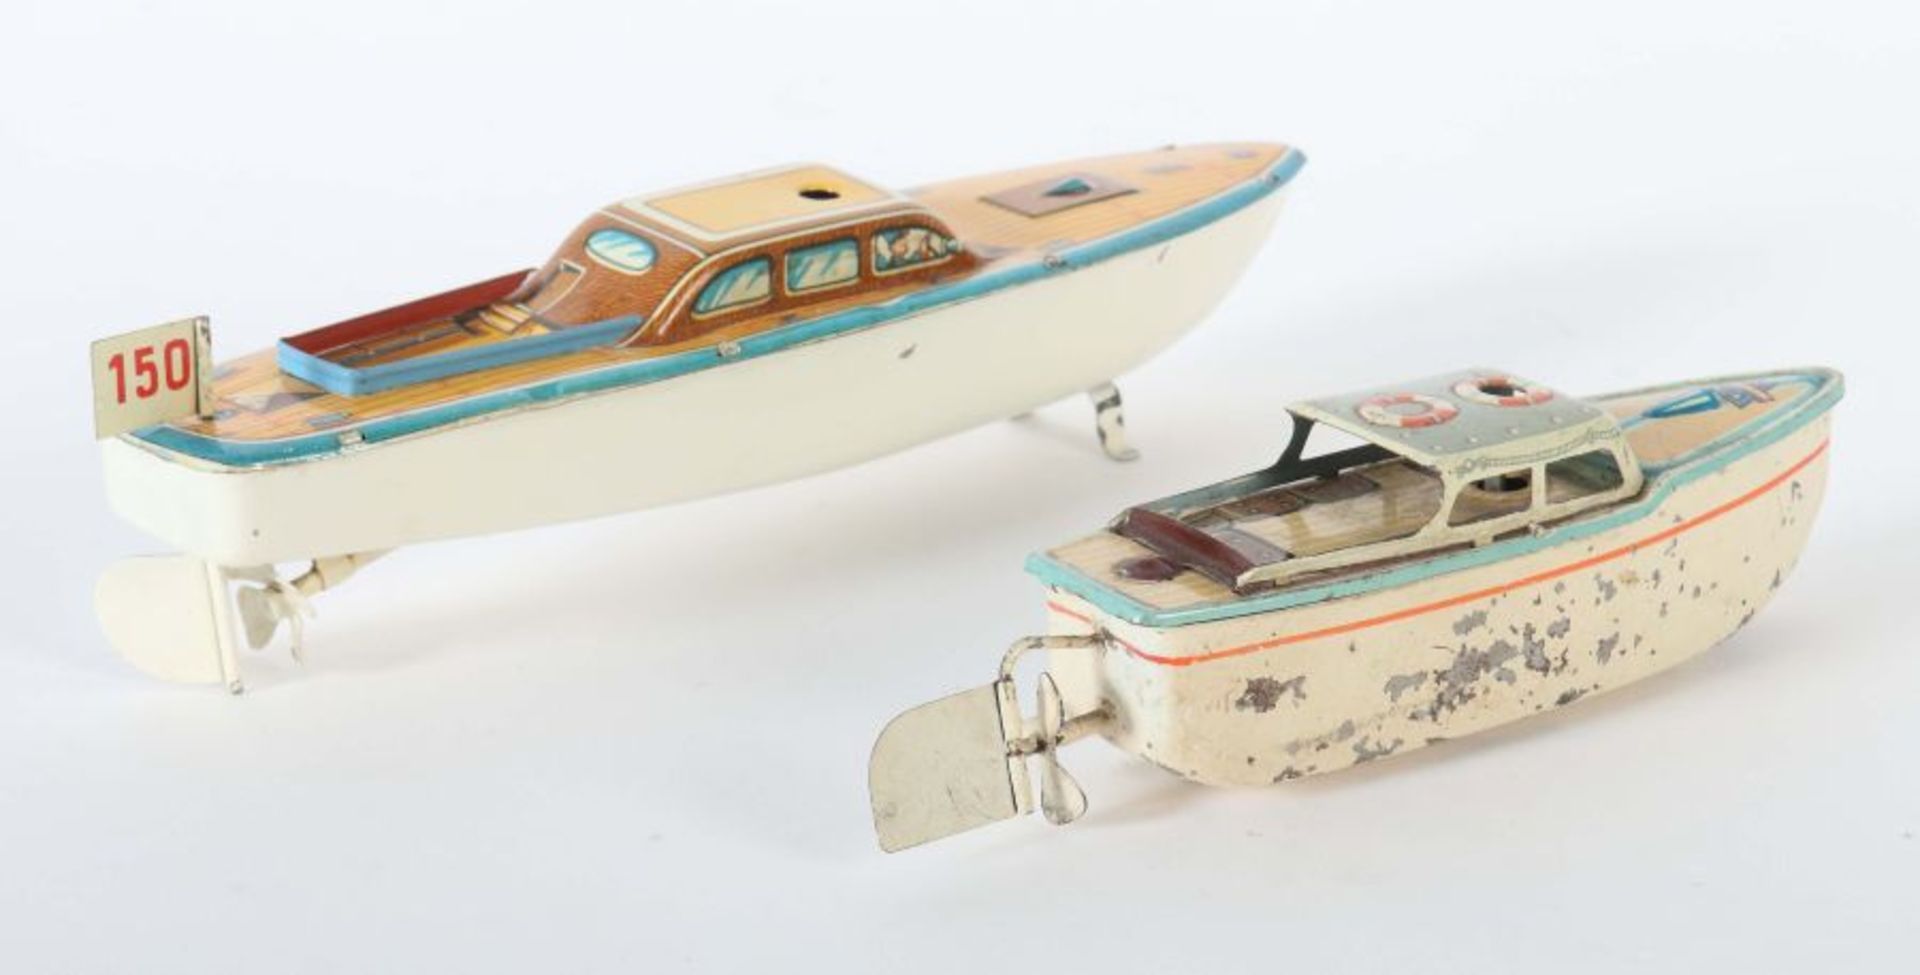 2 Weekender 1 x Arnold, Modell-Nr. 2035, ca. 1950er Jahre, Kabinenboot aus Blech, lithografiert, - Bild 2 aus 2